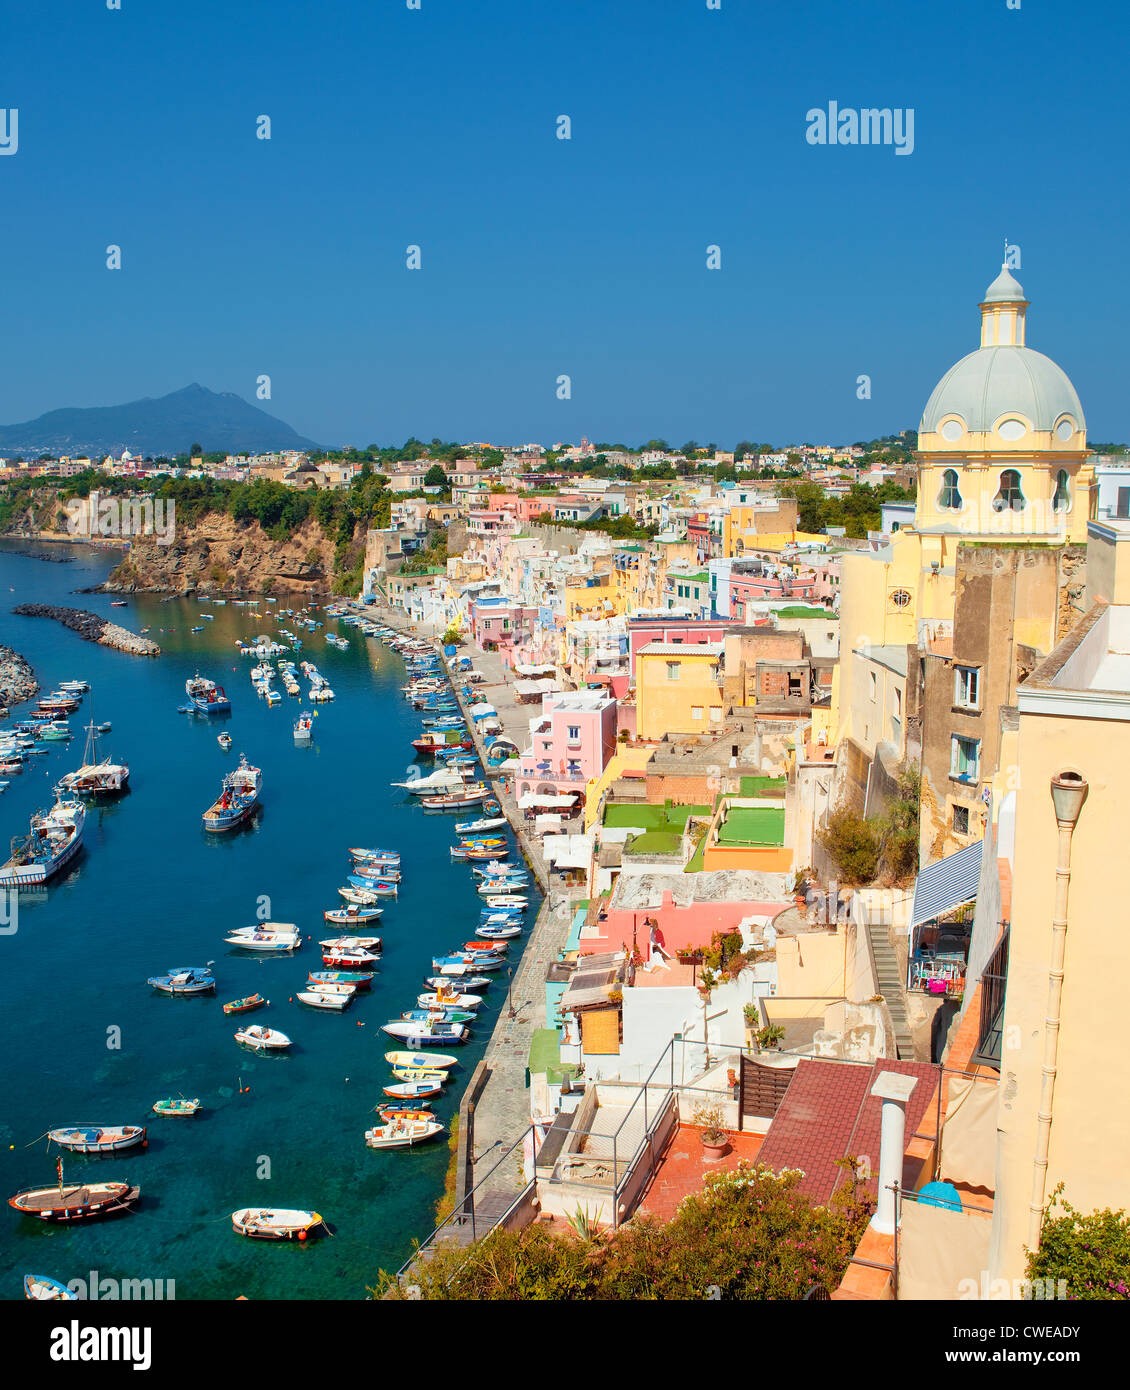 Marina Corricella, Procida Island, Bay of Naples, Campania, Italy Stock Photo